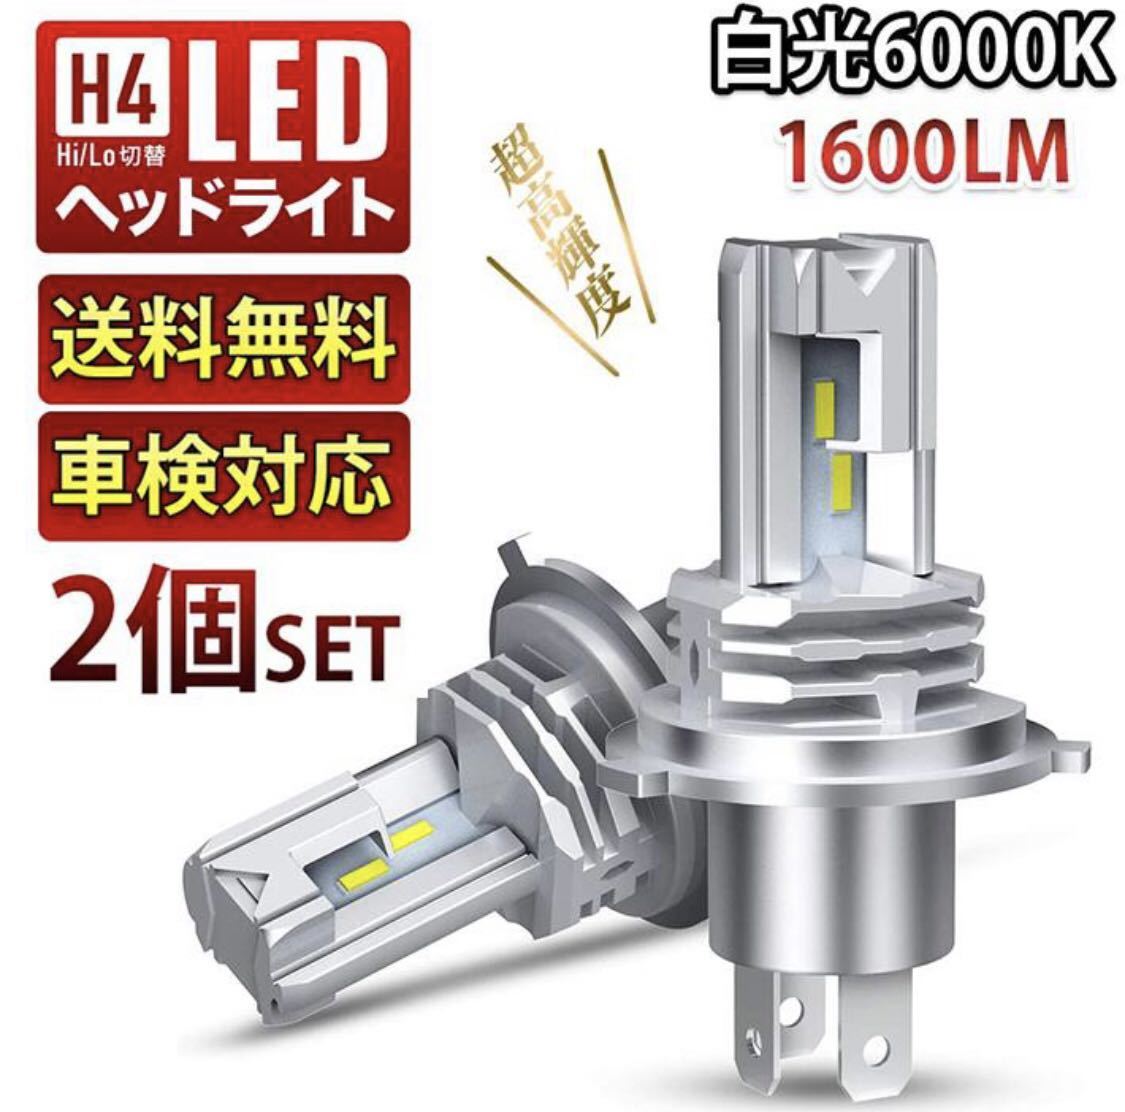 LED H4 ヘッドライト バイク 車 トヨタ スズキ ホンダ 日産 超爆光